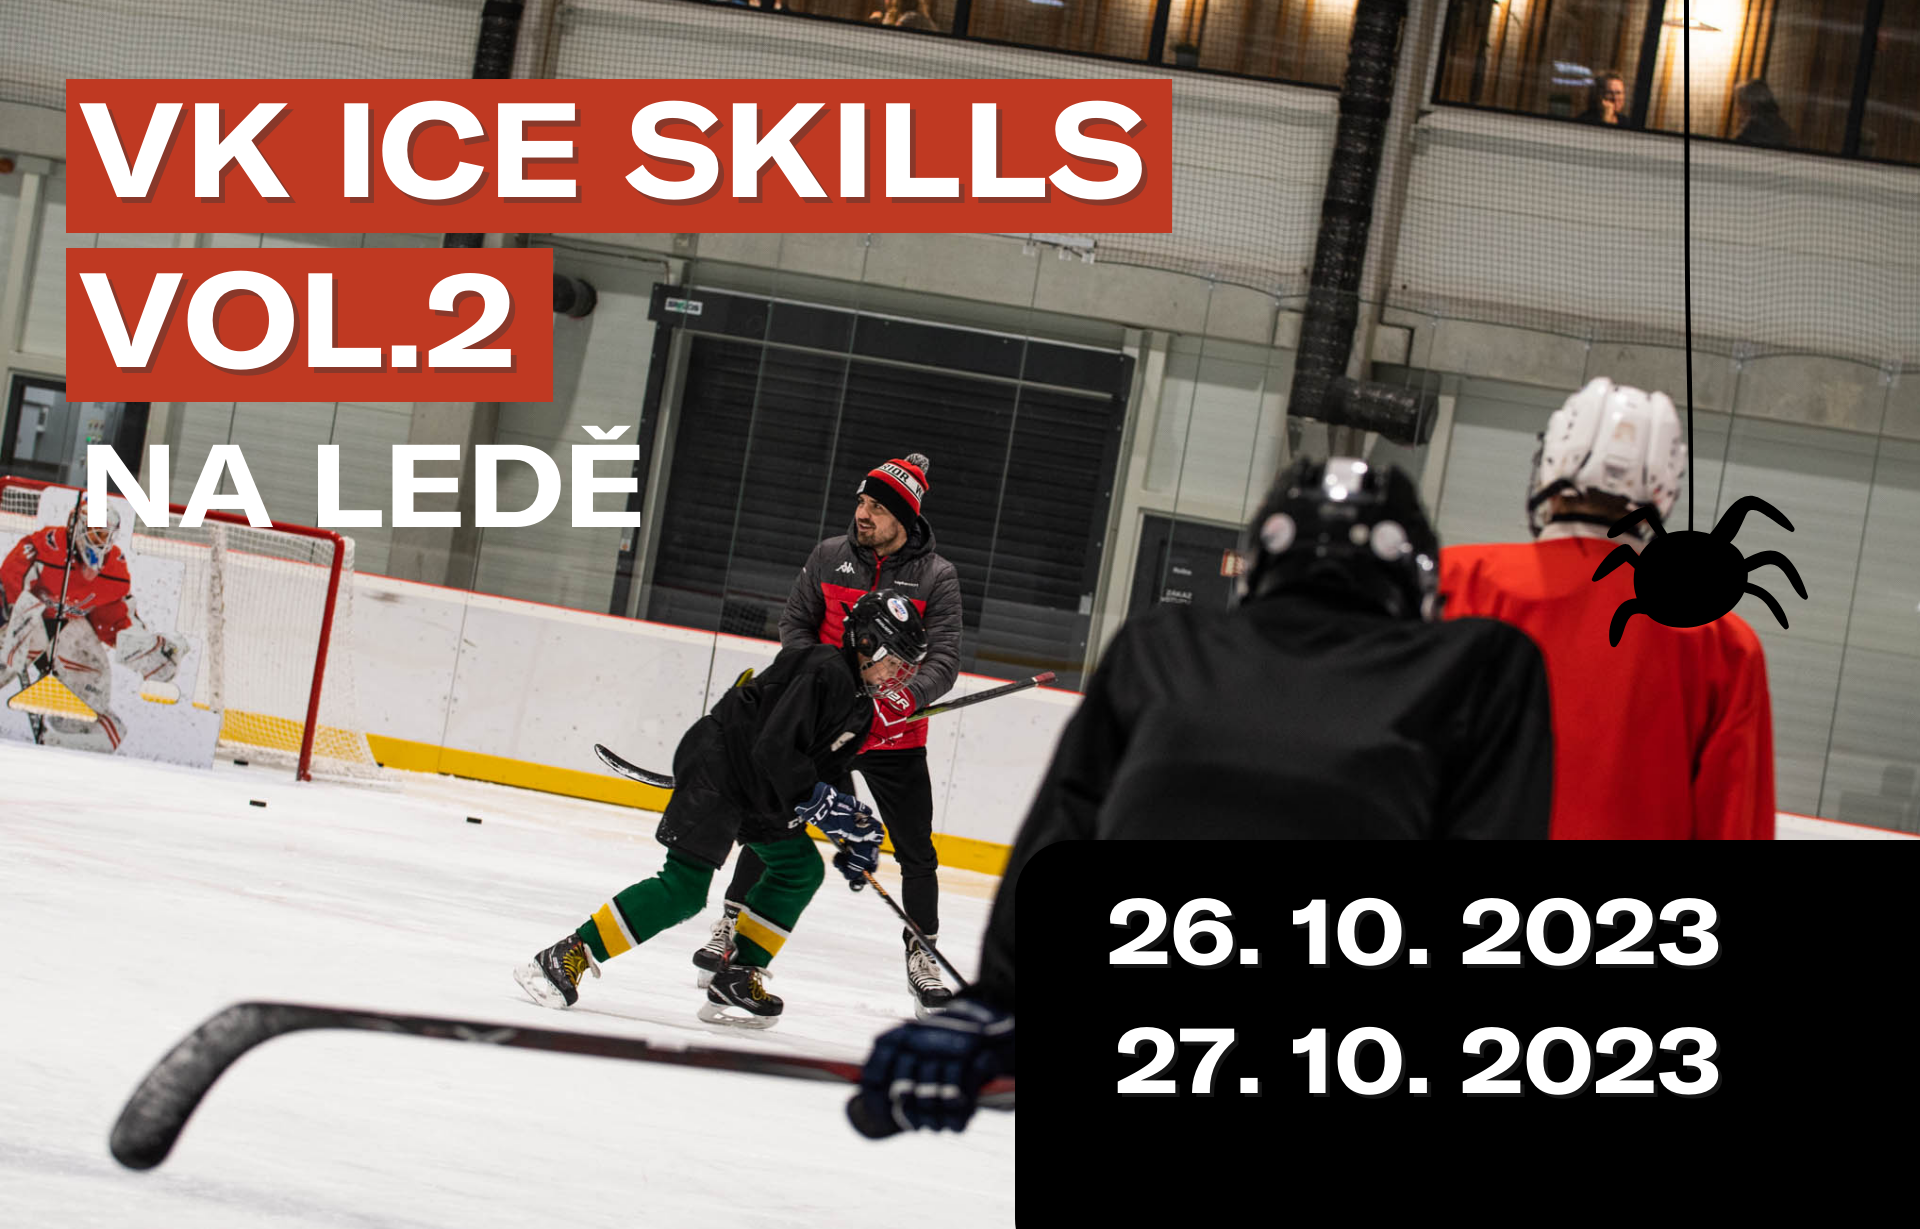 VK ice skills 2